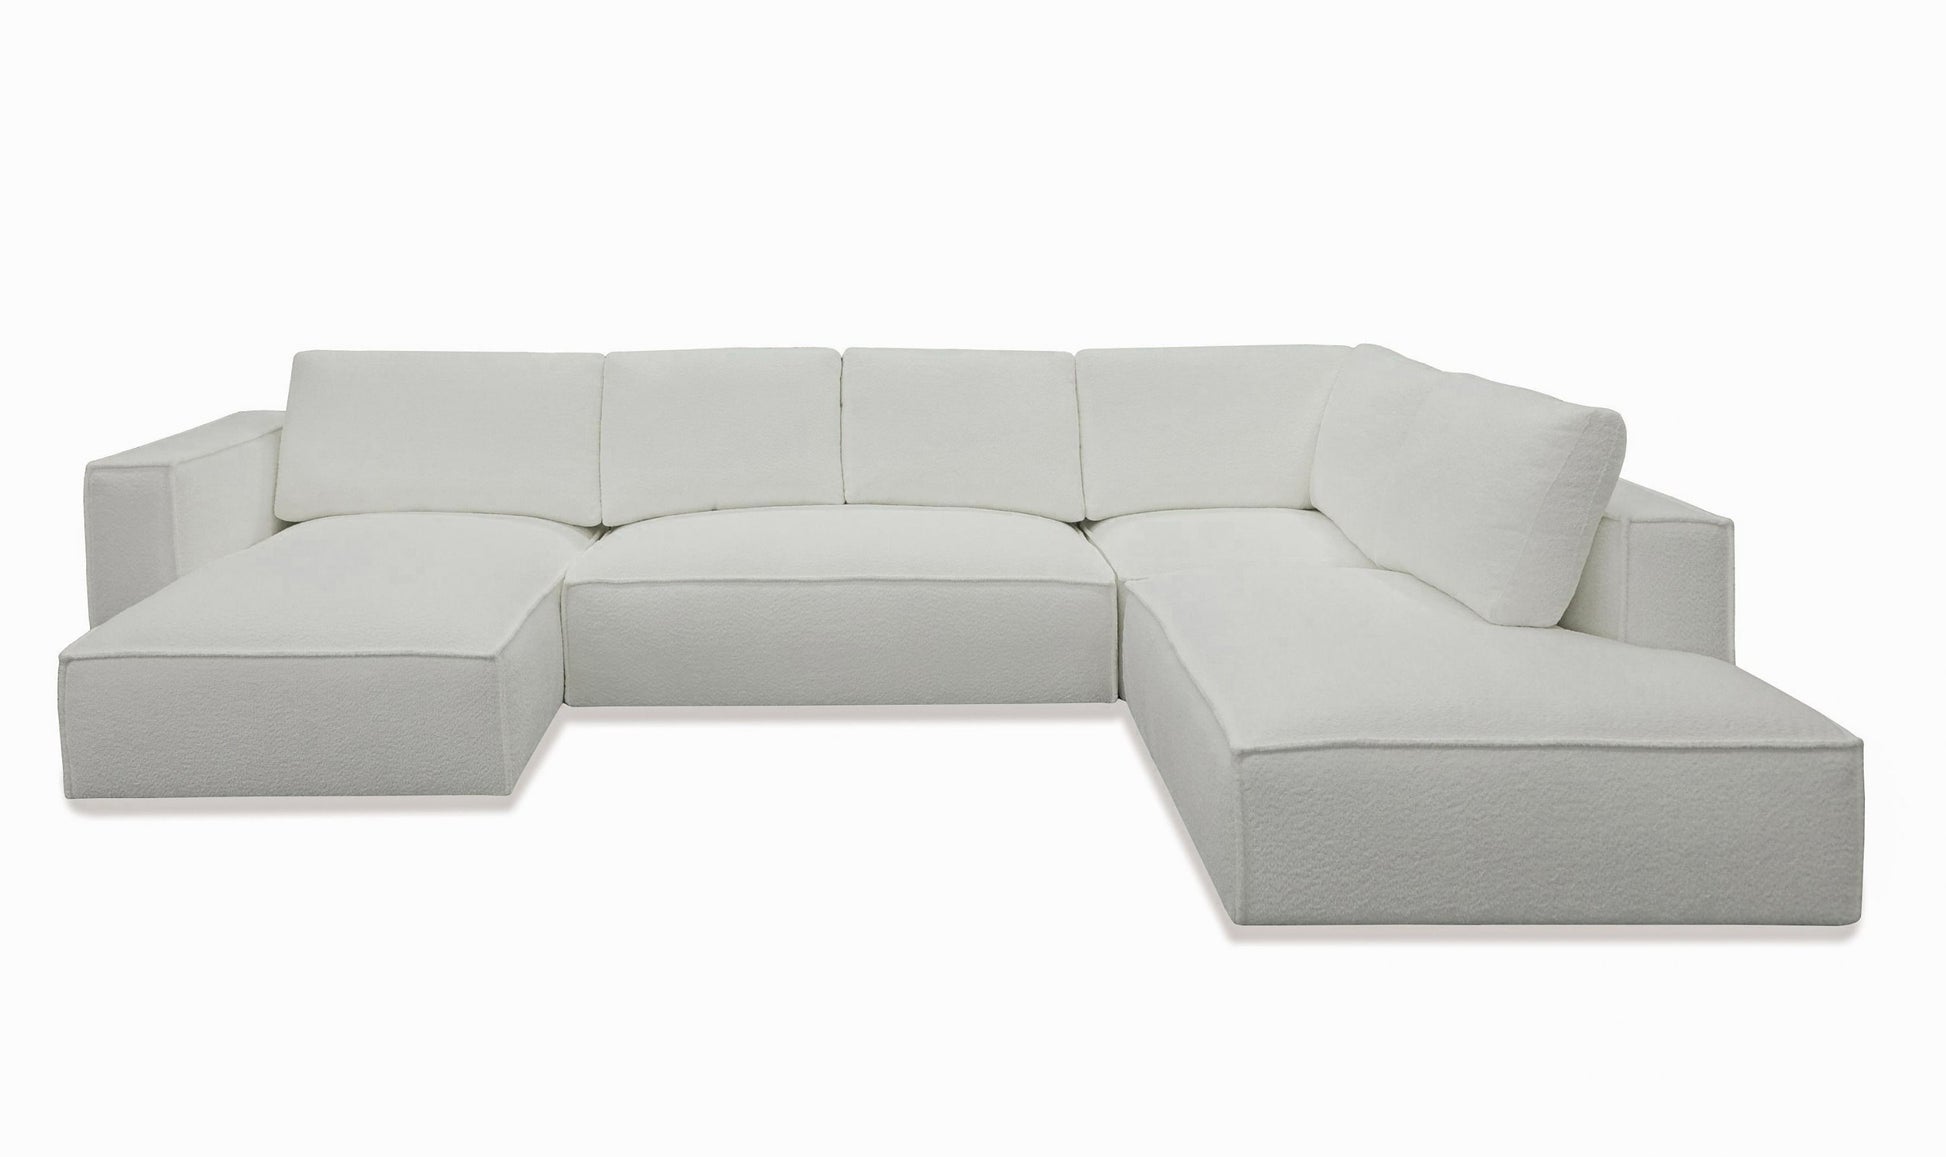 Divani Casa Lulu Modern White Fabric Modular Sectional Sofa 3